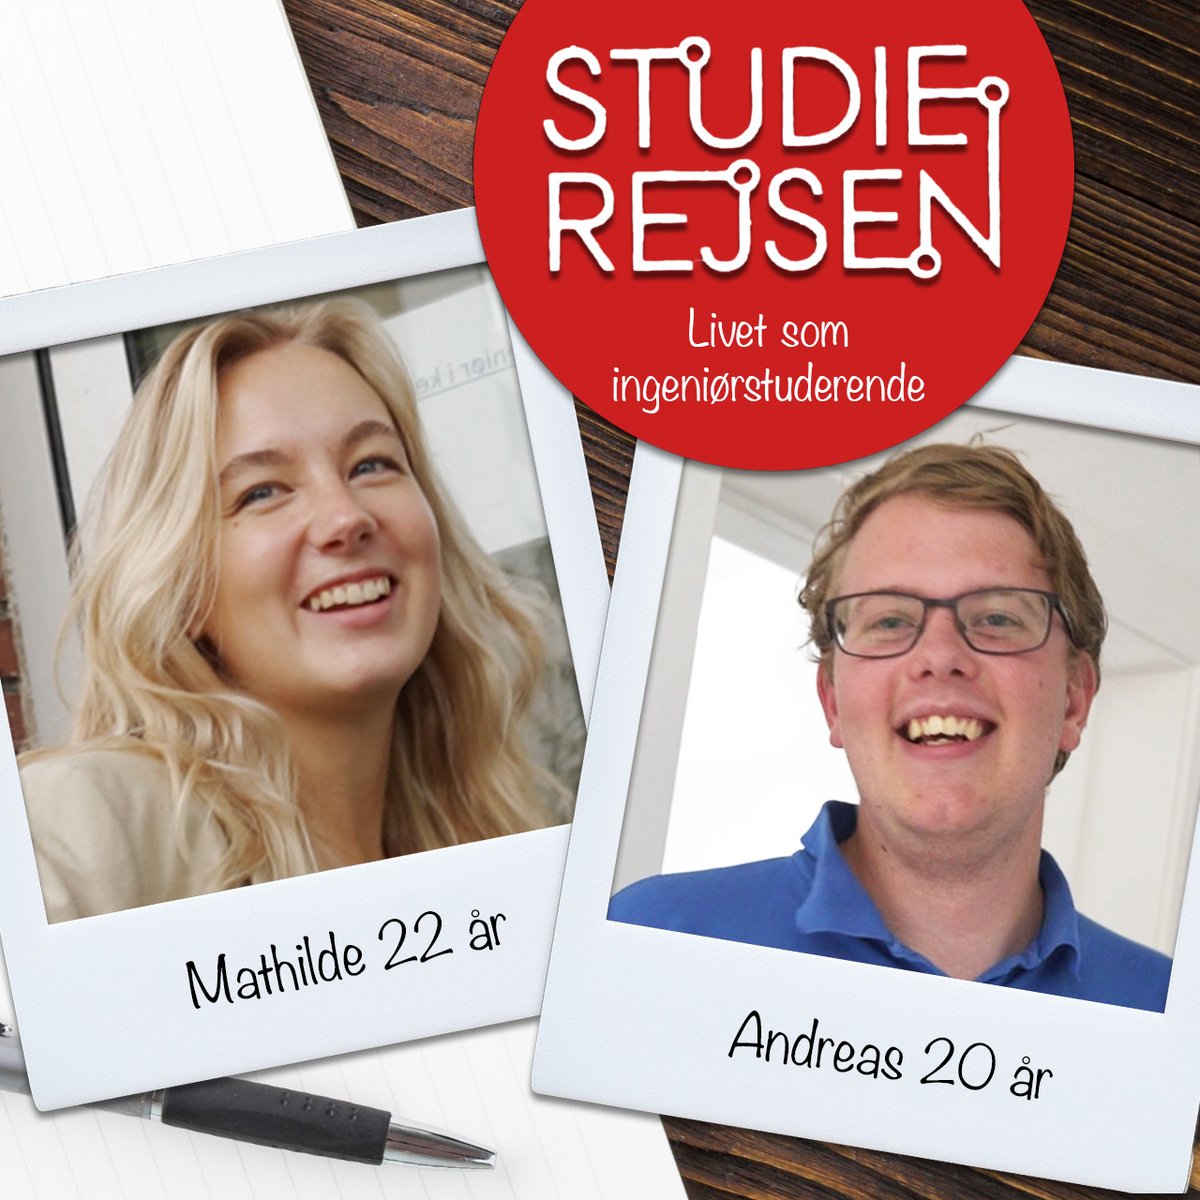  Studierejsen er en dokumentarserie, der i denne sæson følger Emma og Magnus og deres liv som studerende på Aarhus Universitet.